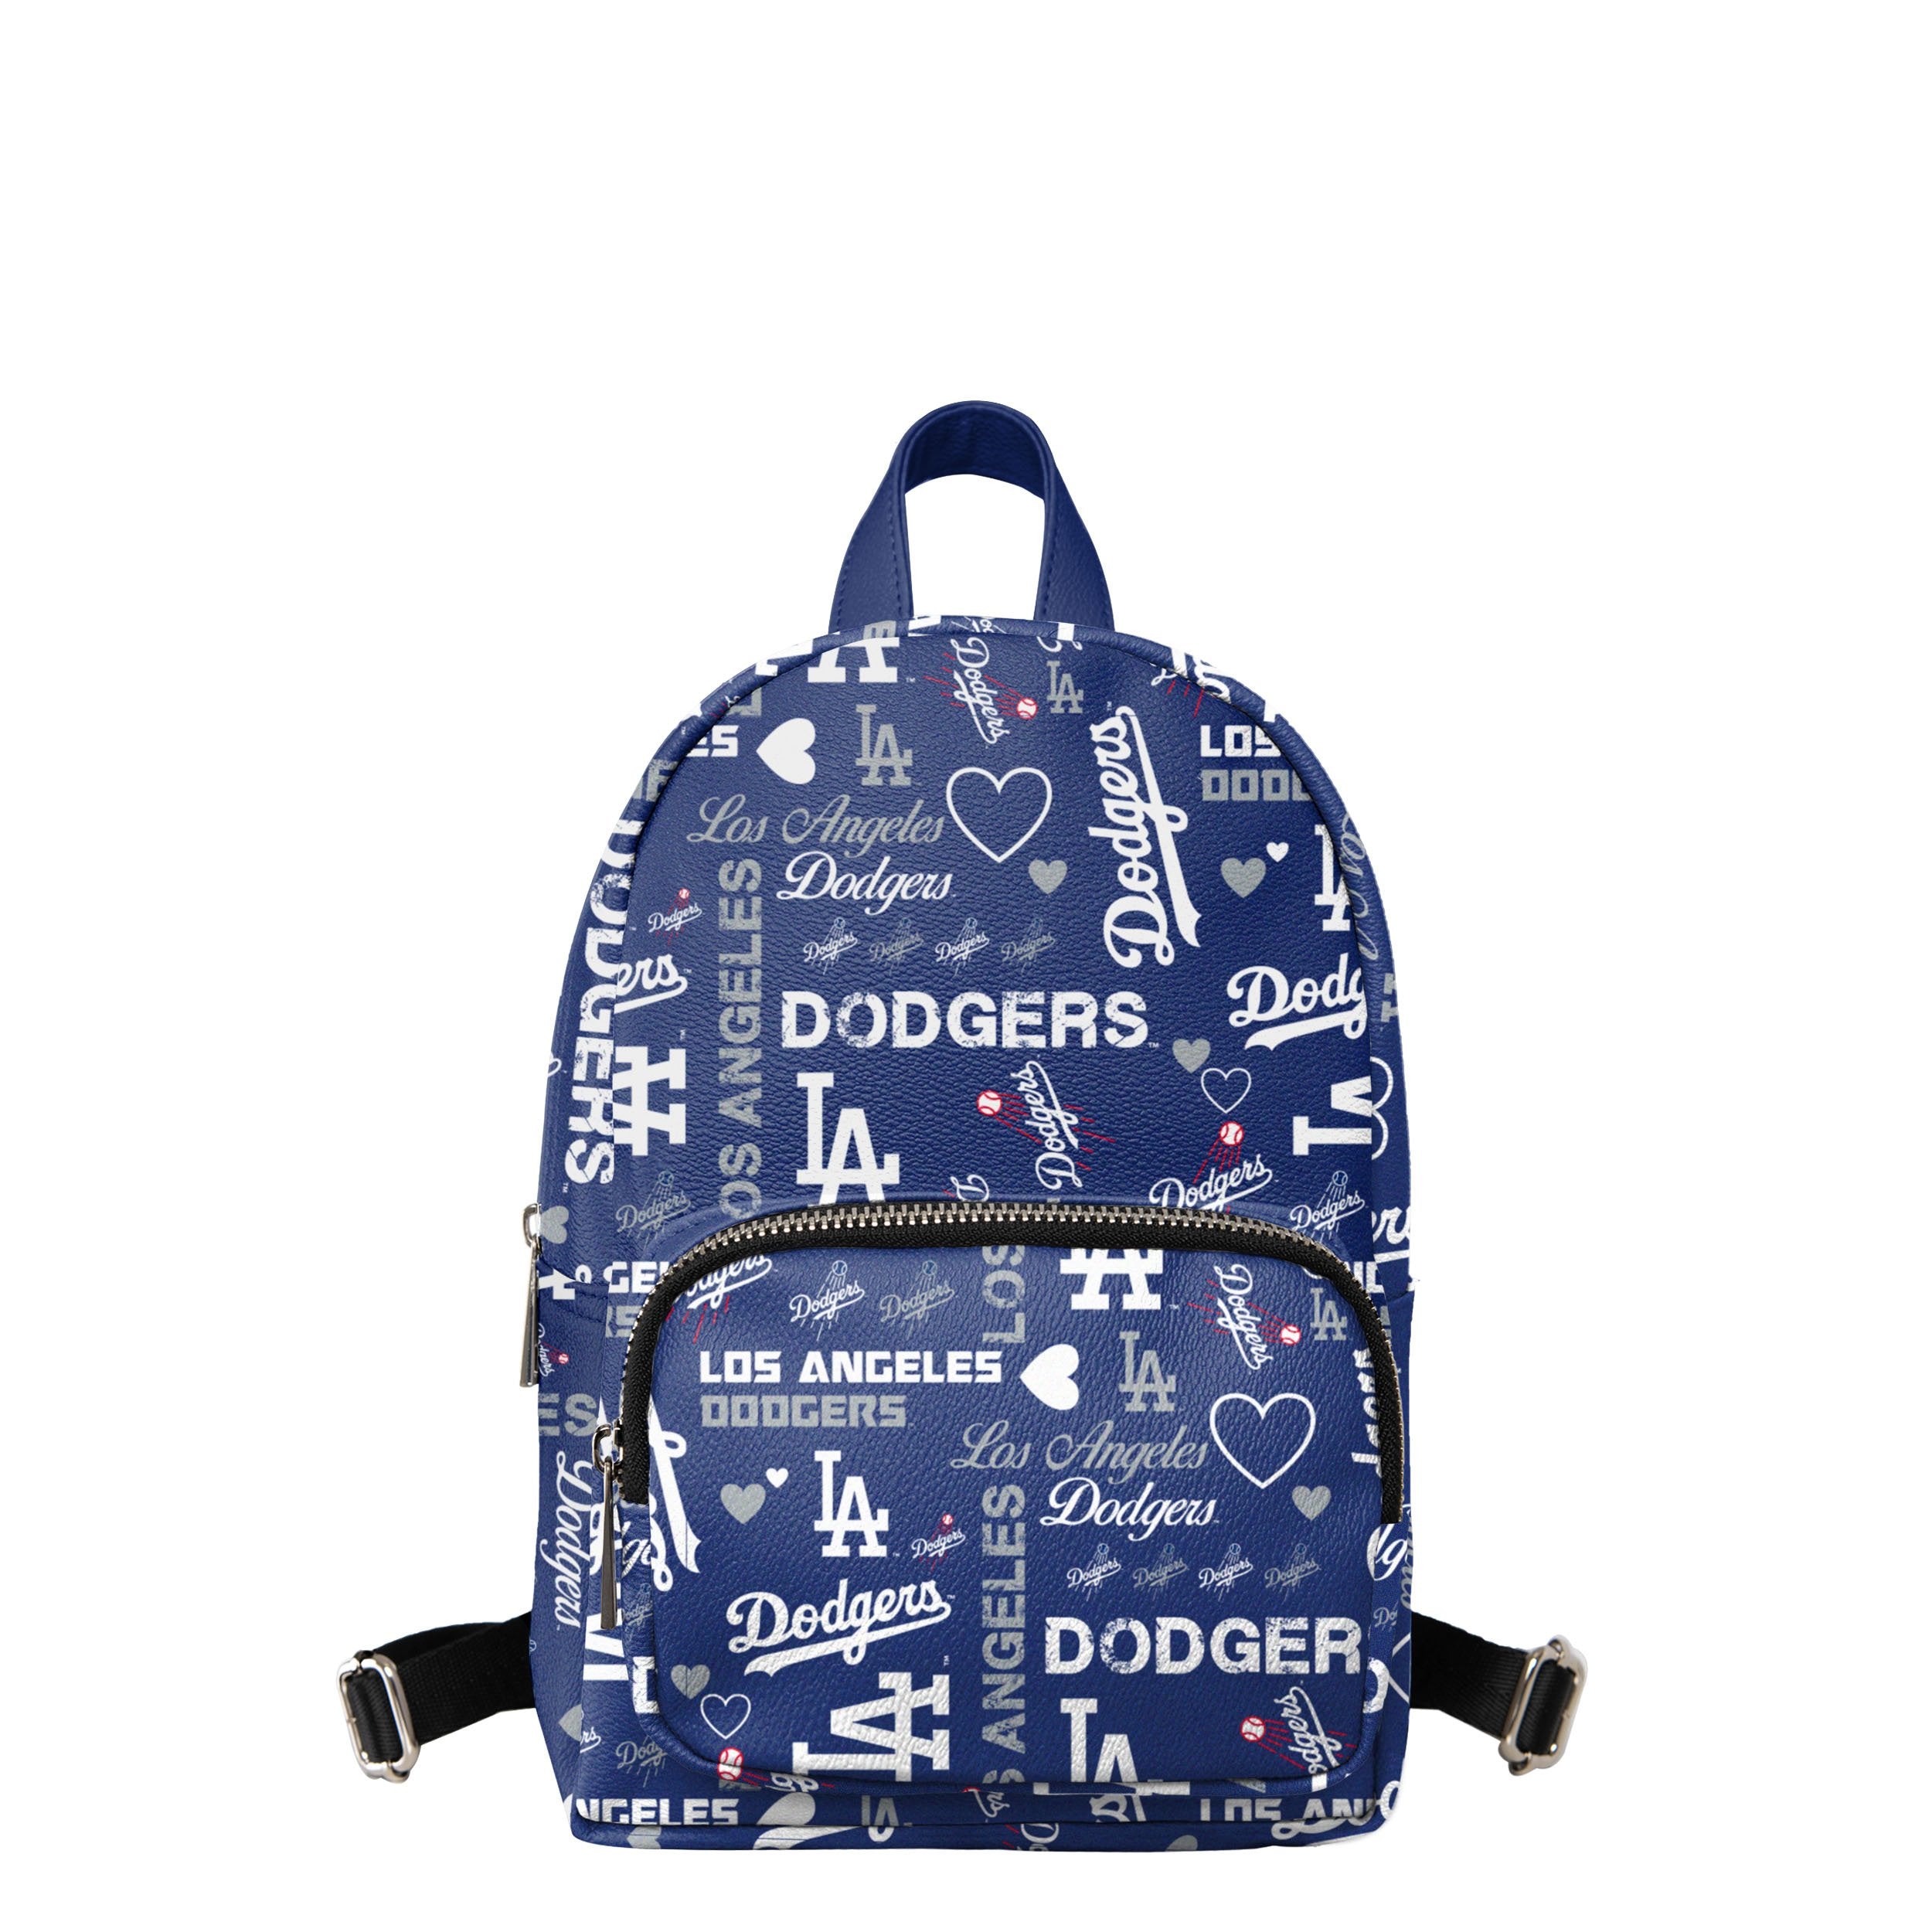 Dodger Stadium Approved Backpack 